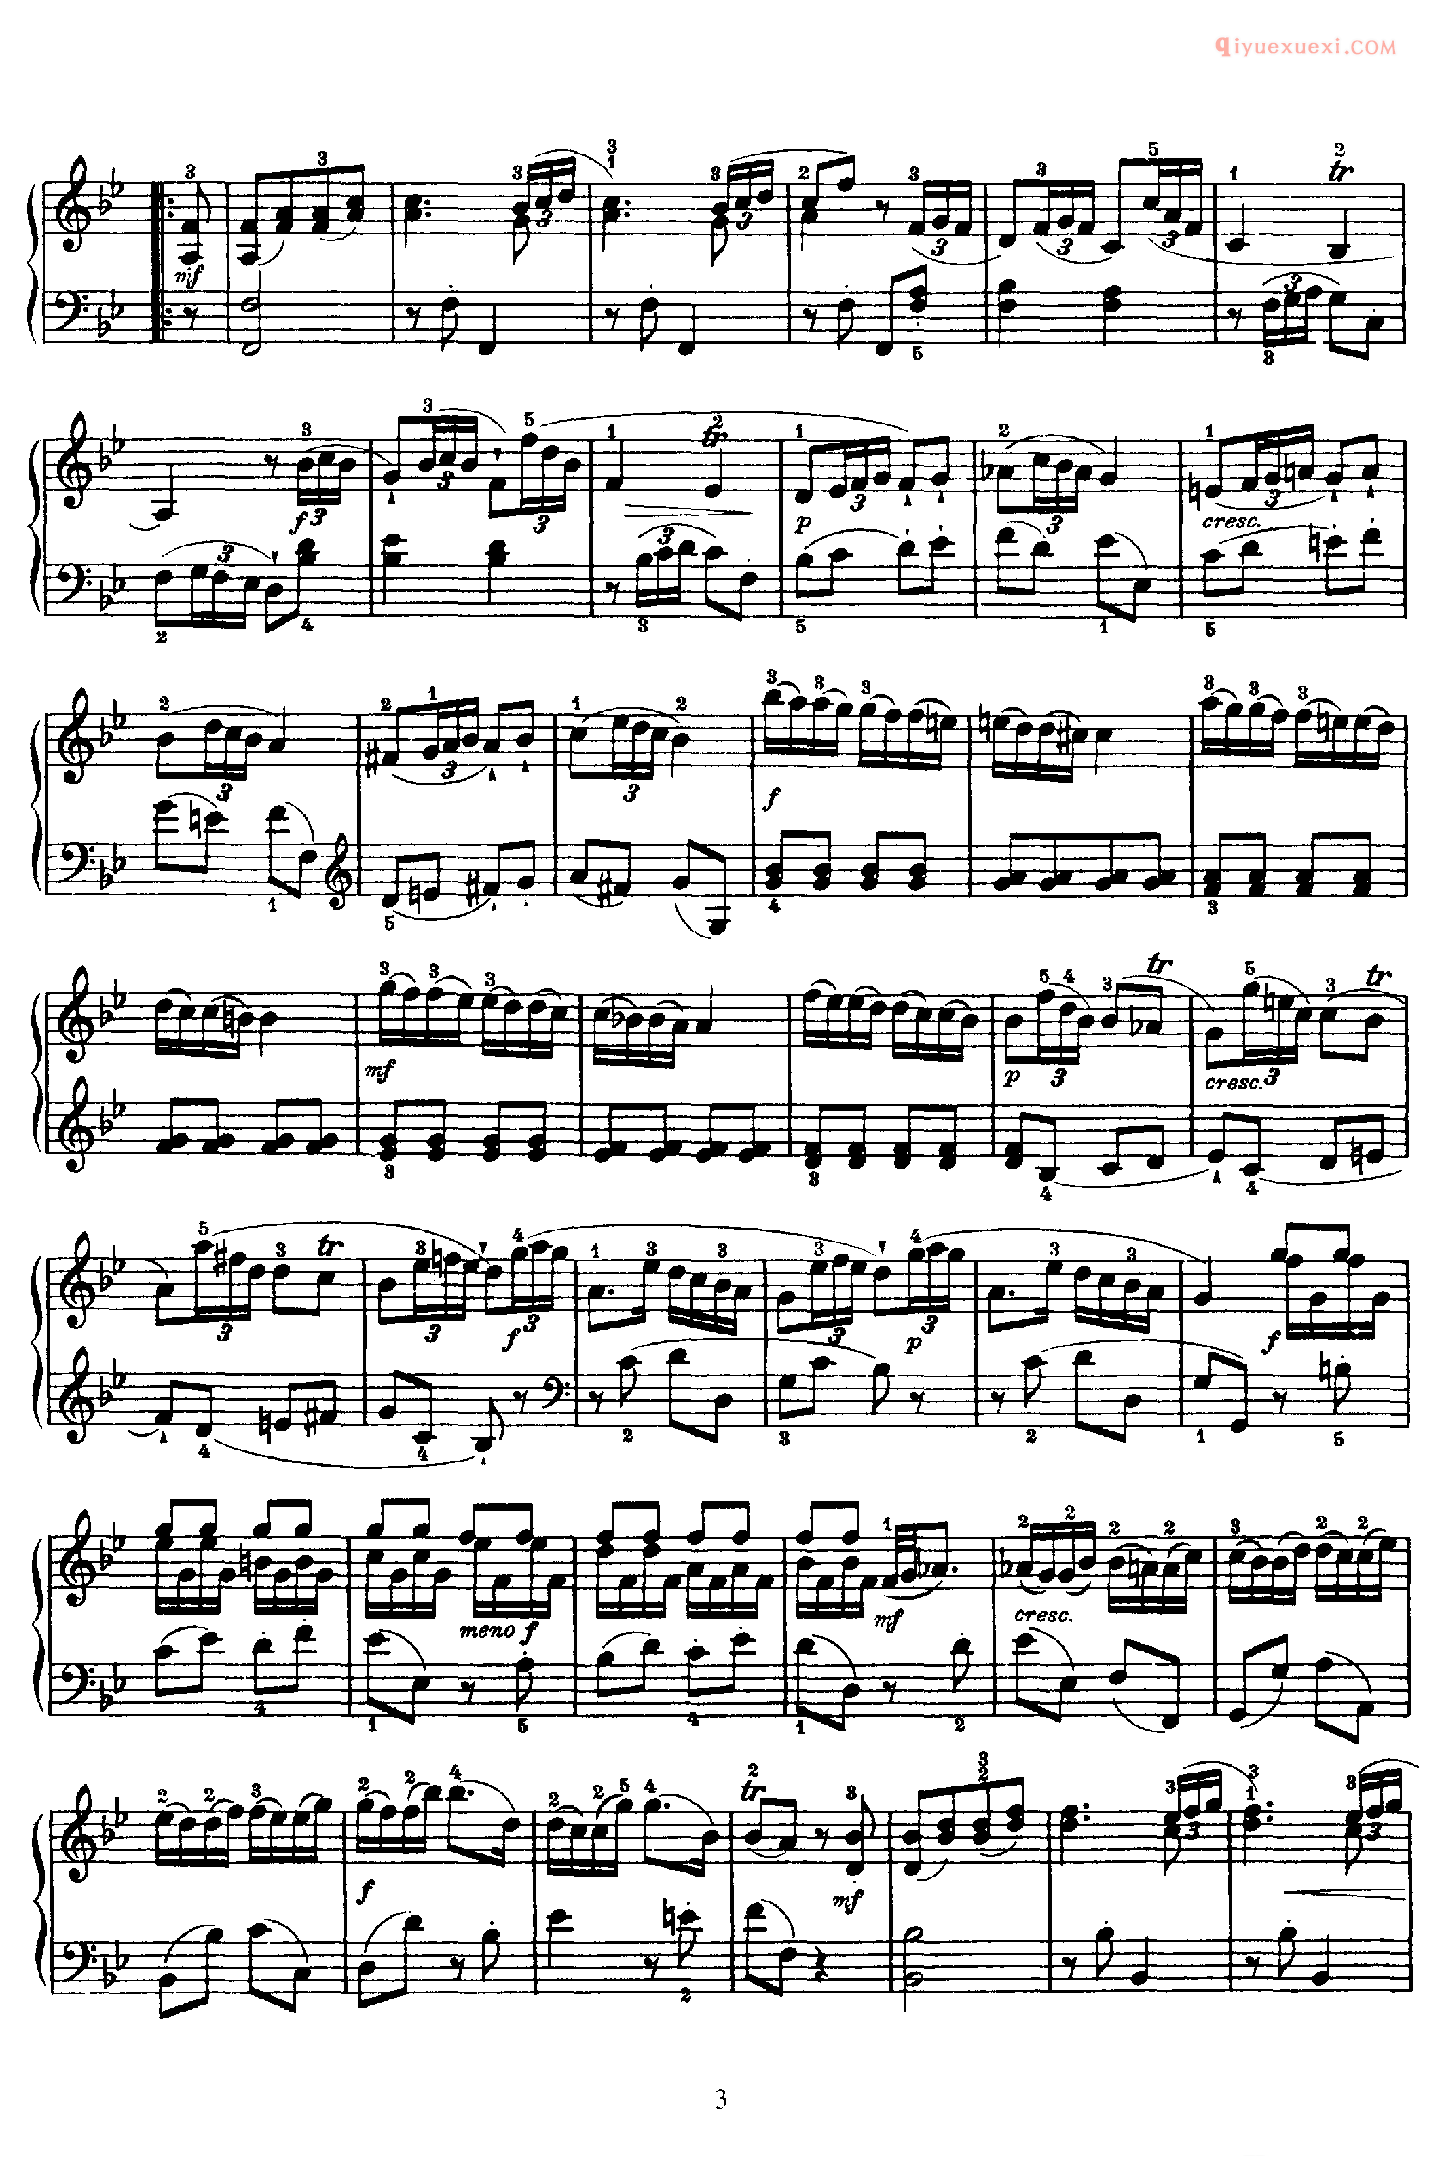 海顿Bb大调《第2钢琴奏鸣曲》Franz Joseph Haydn Sonata in Bb Major_海顿钢琴谱